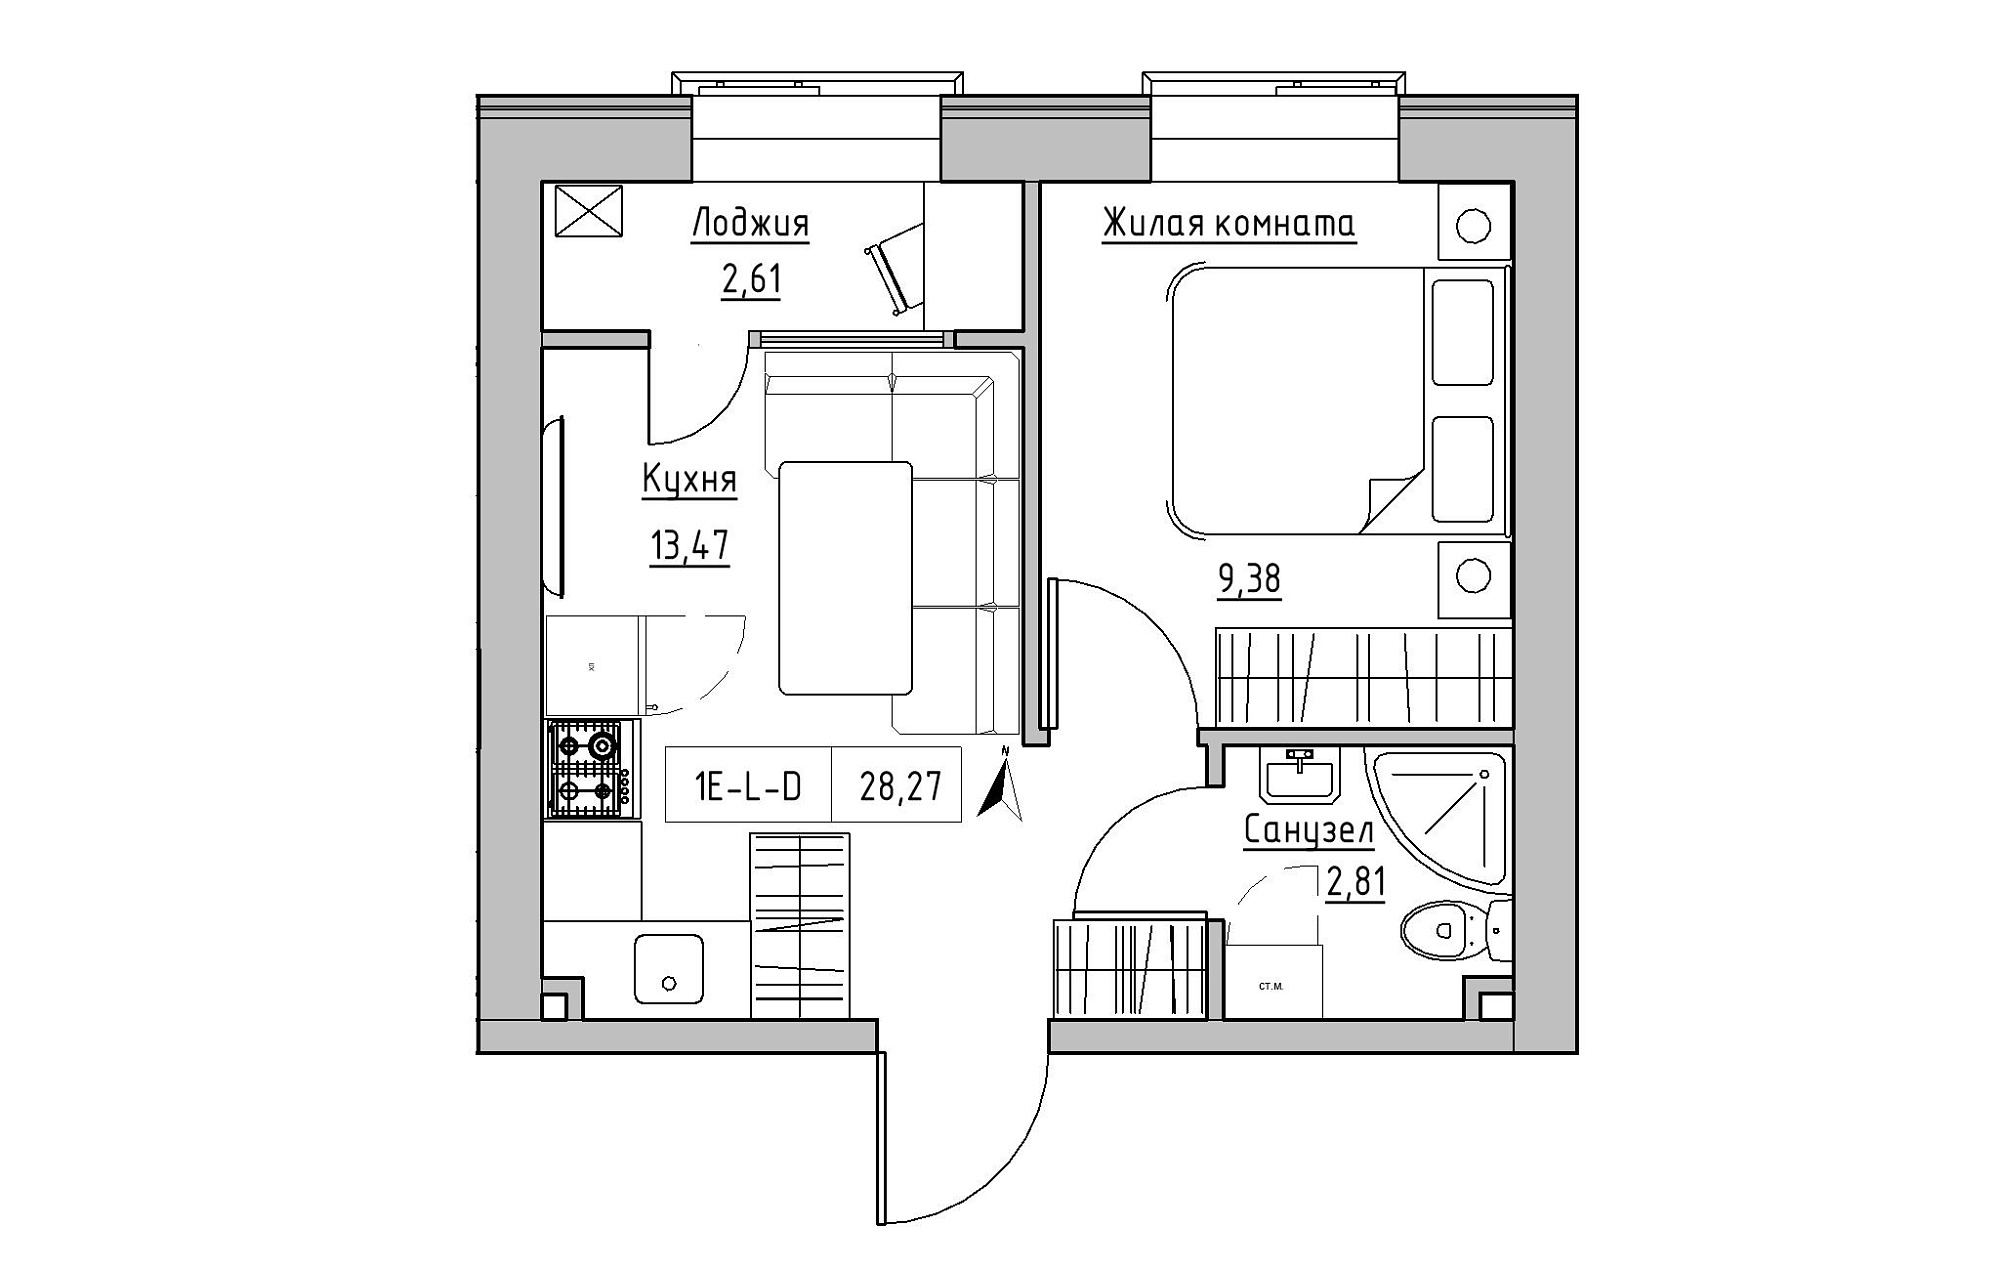 Планировка 1-к квартира площей 28.27м2, KS-019-04/0015.